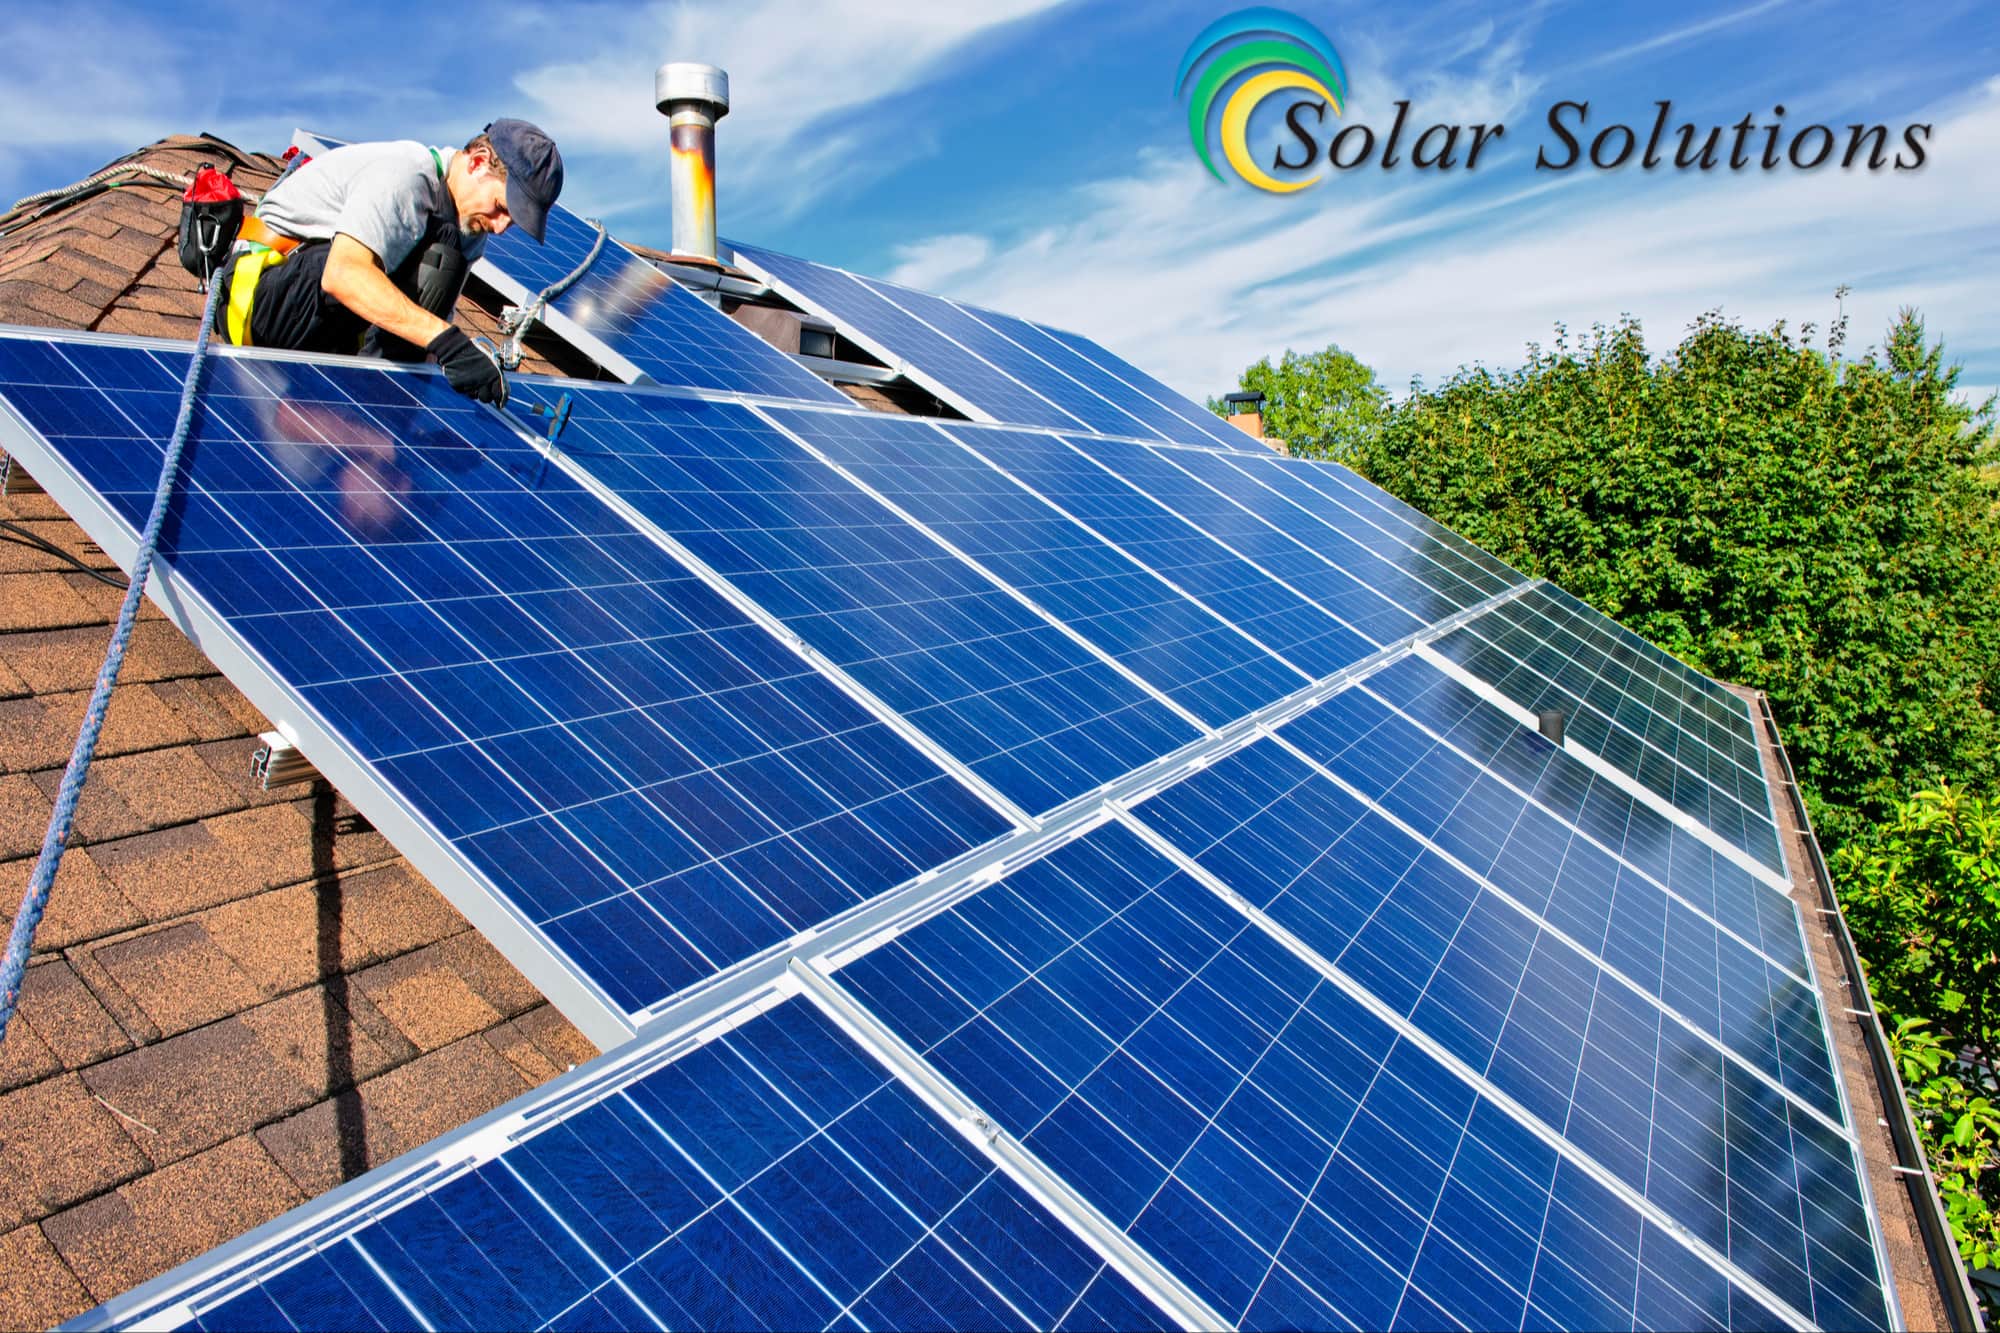 Solar Solutions - Albuquerque (NM 87109), US, solar panels